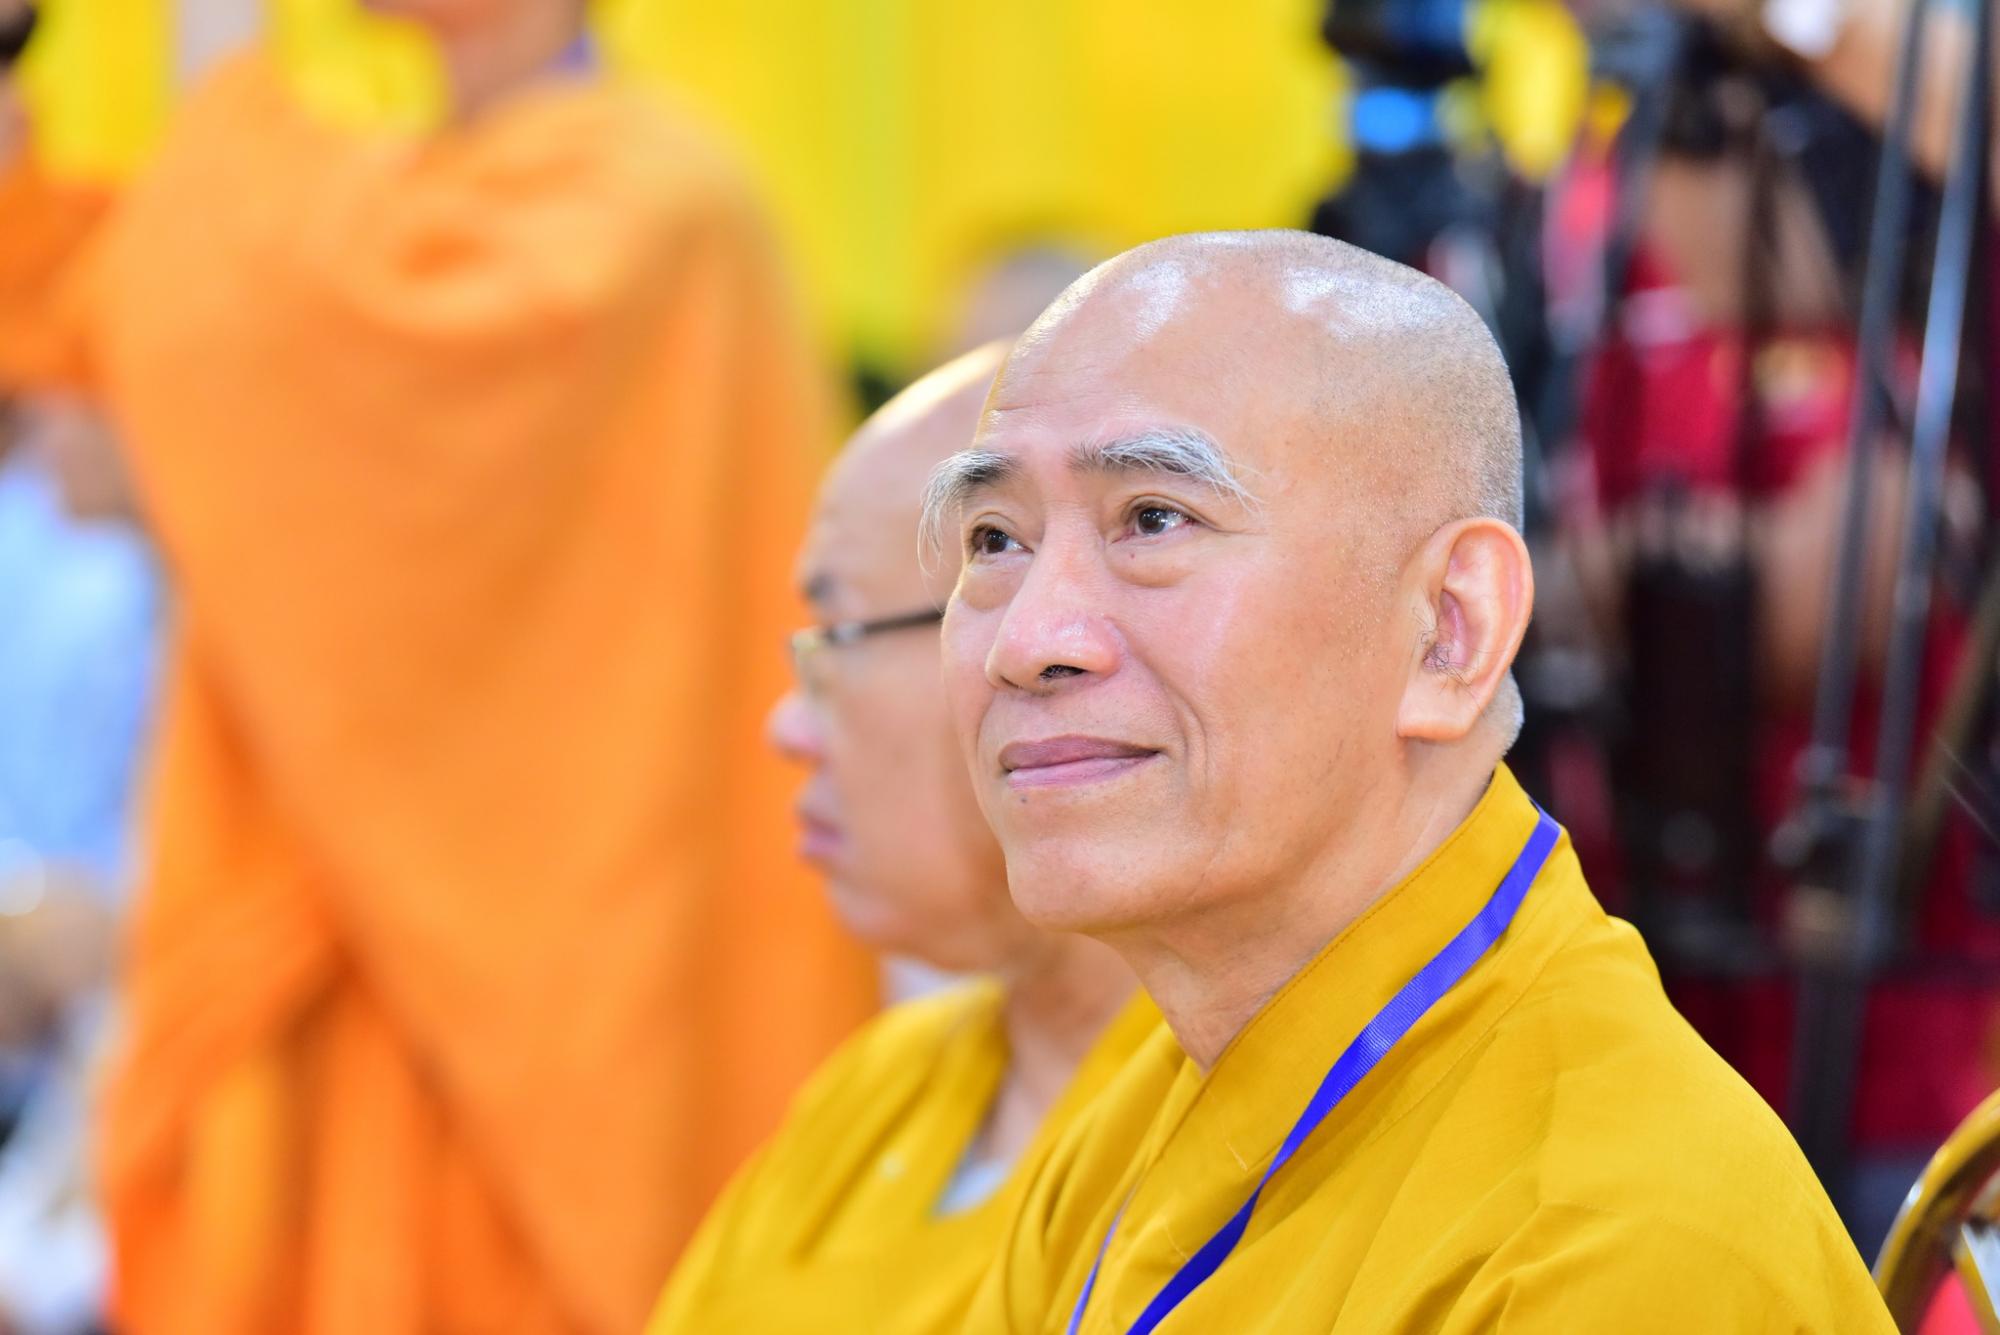 Thượng tọa Thích Nhật Từ được suy cử làm Phó Trưởng Ban Thường trực Ban Phật giáo quốc tế Trung ương Giáo hội